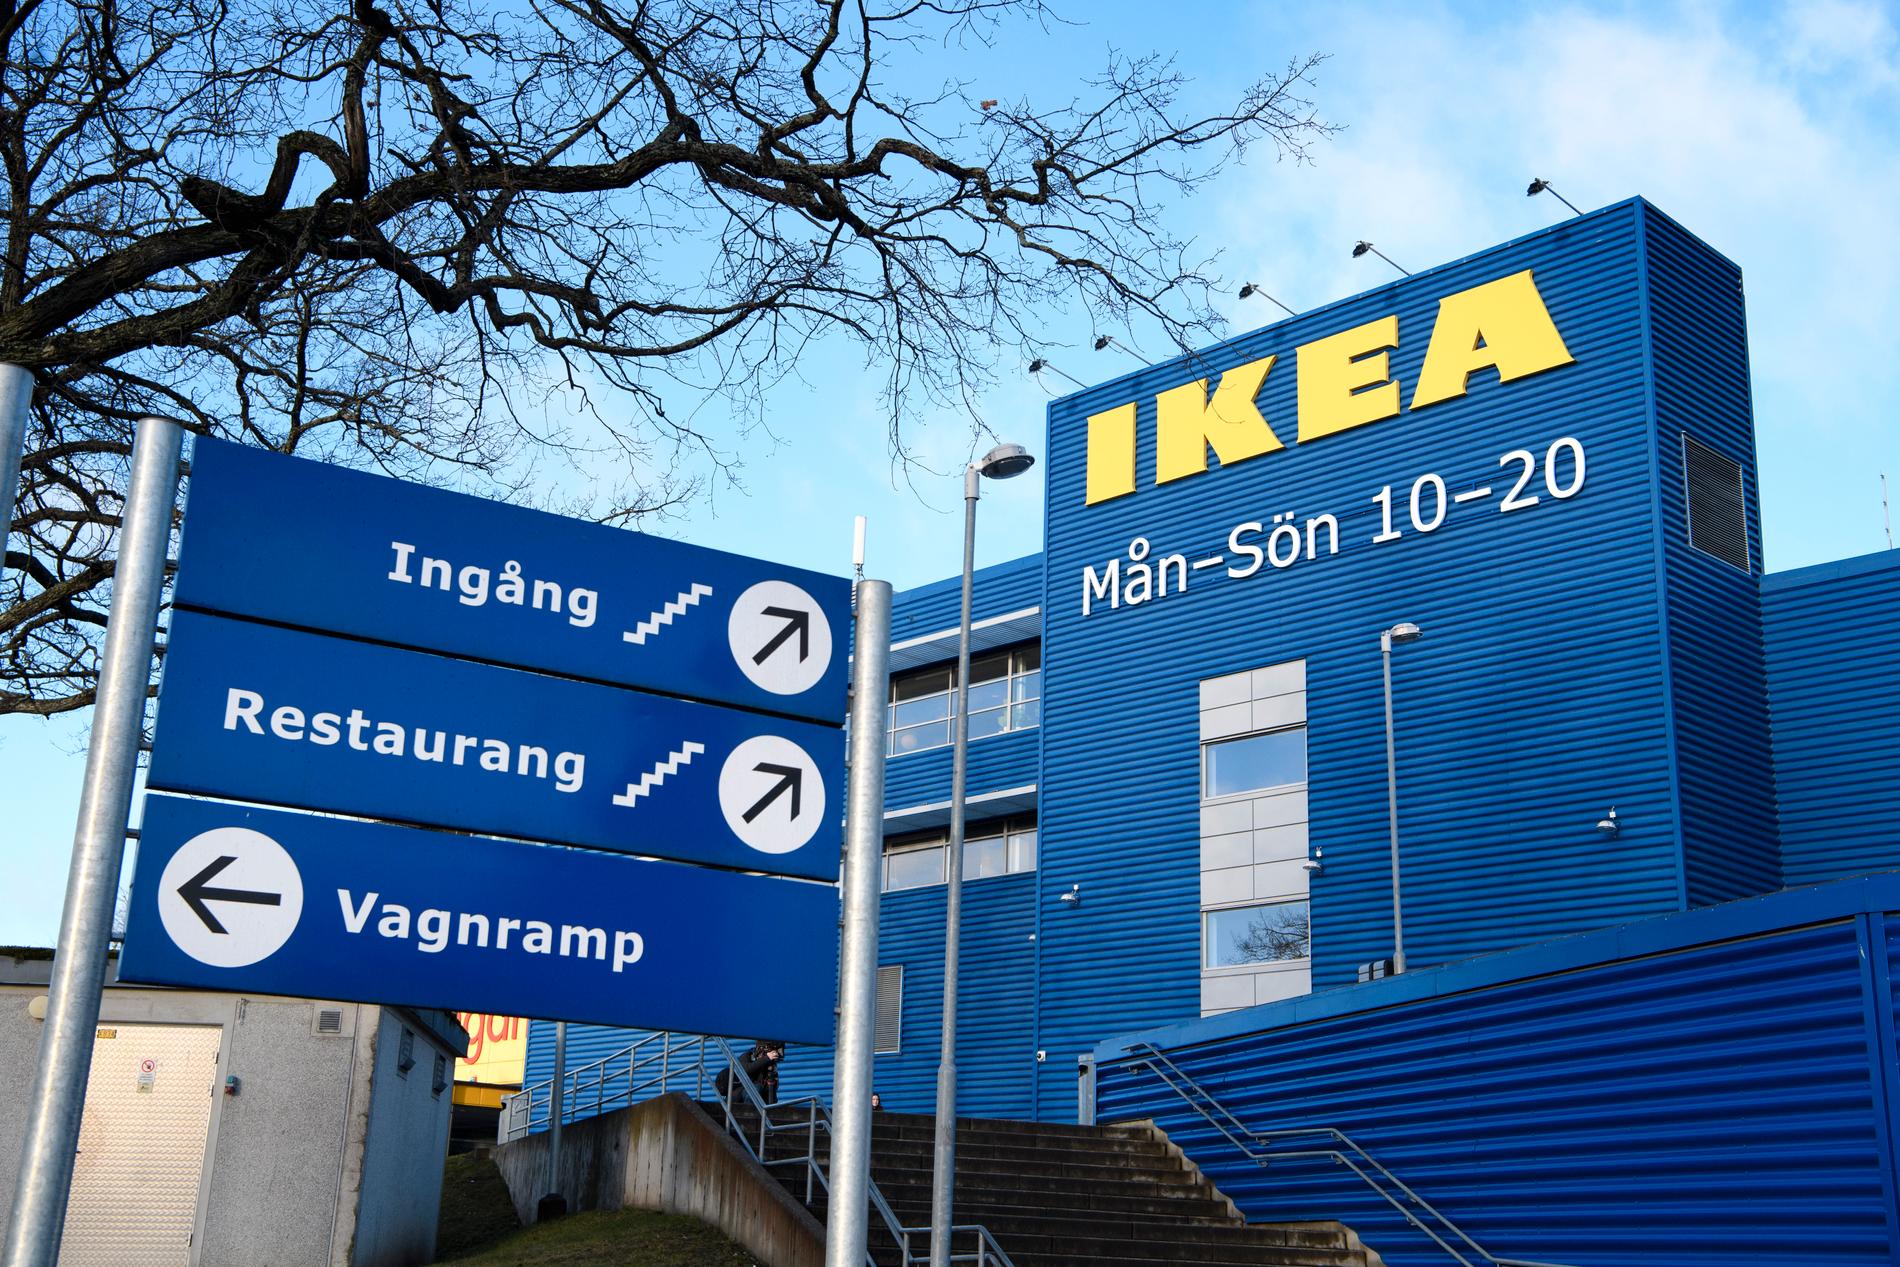 Ikeas varuhus i Kungens kurva söder om Stockholm. 